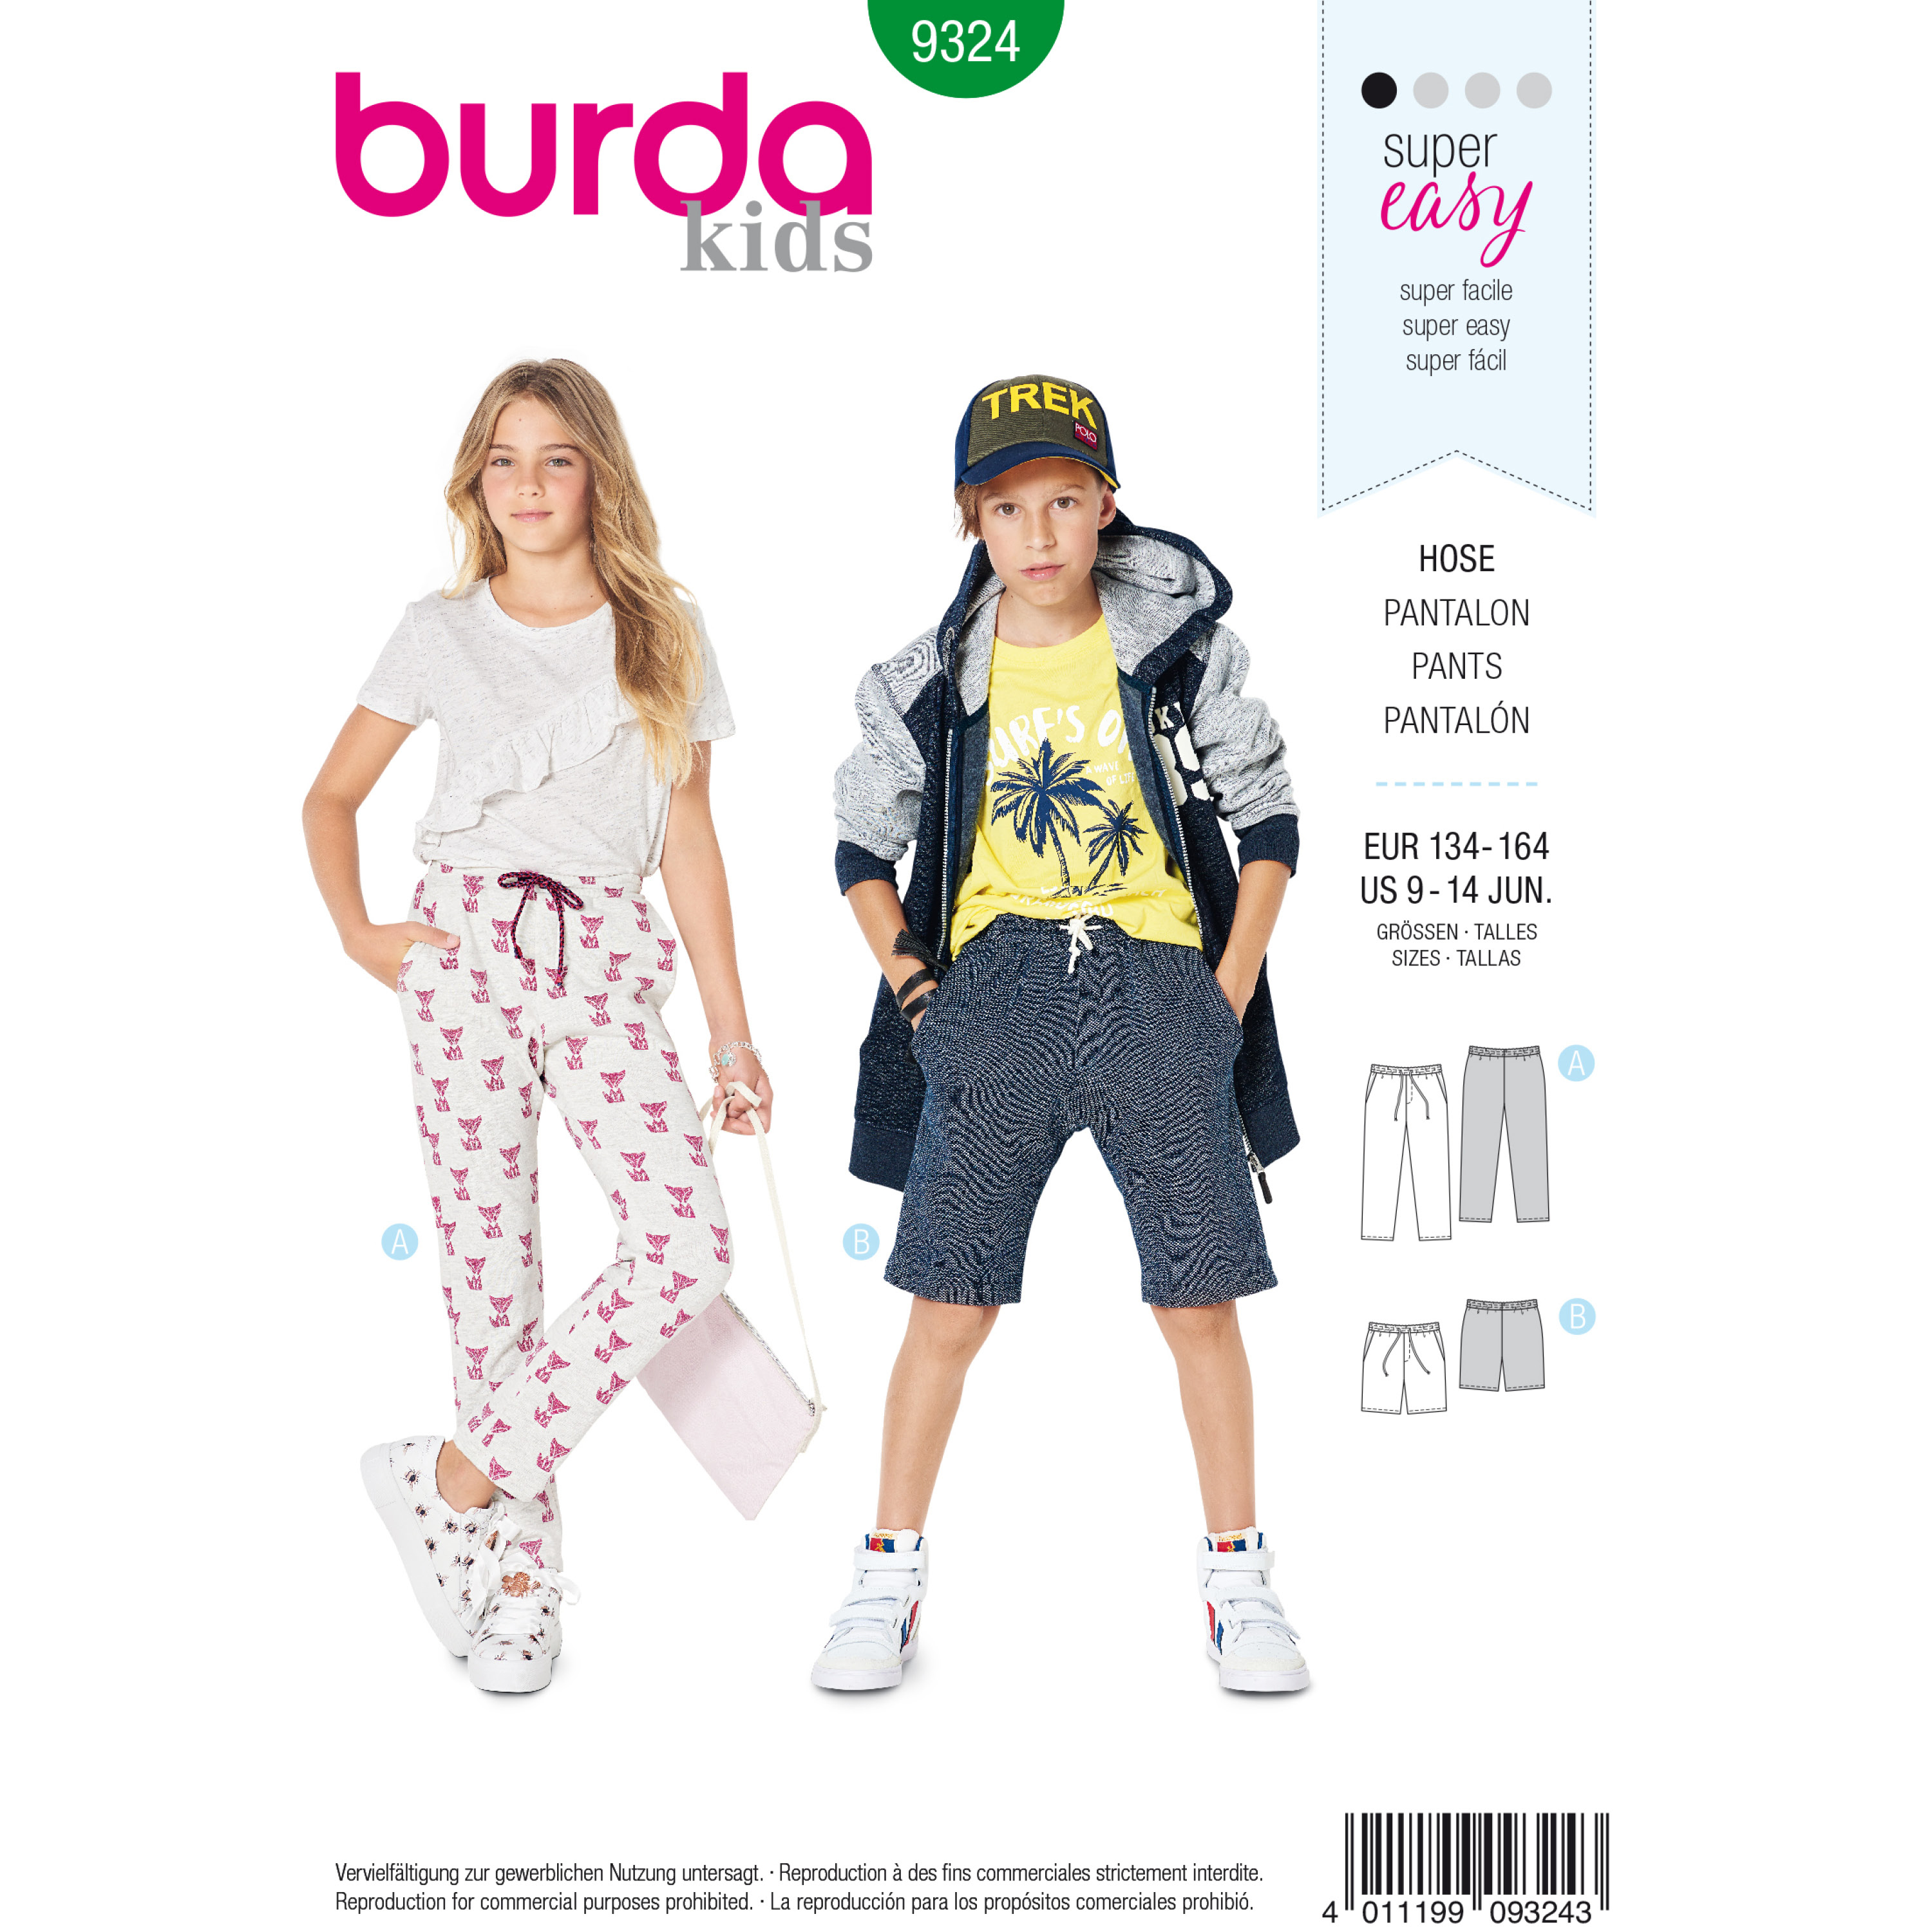 Burda KIDS Pattern 9406 Boys 5 Pocket Jeans~Pants w/Cuff Variation Sz 4-10